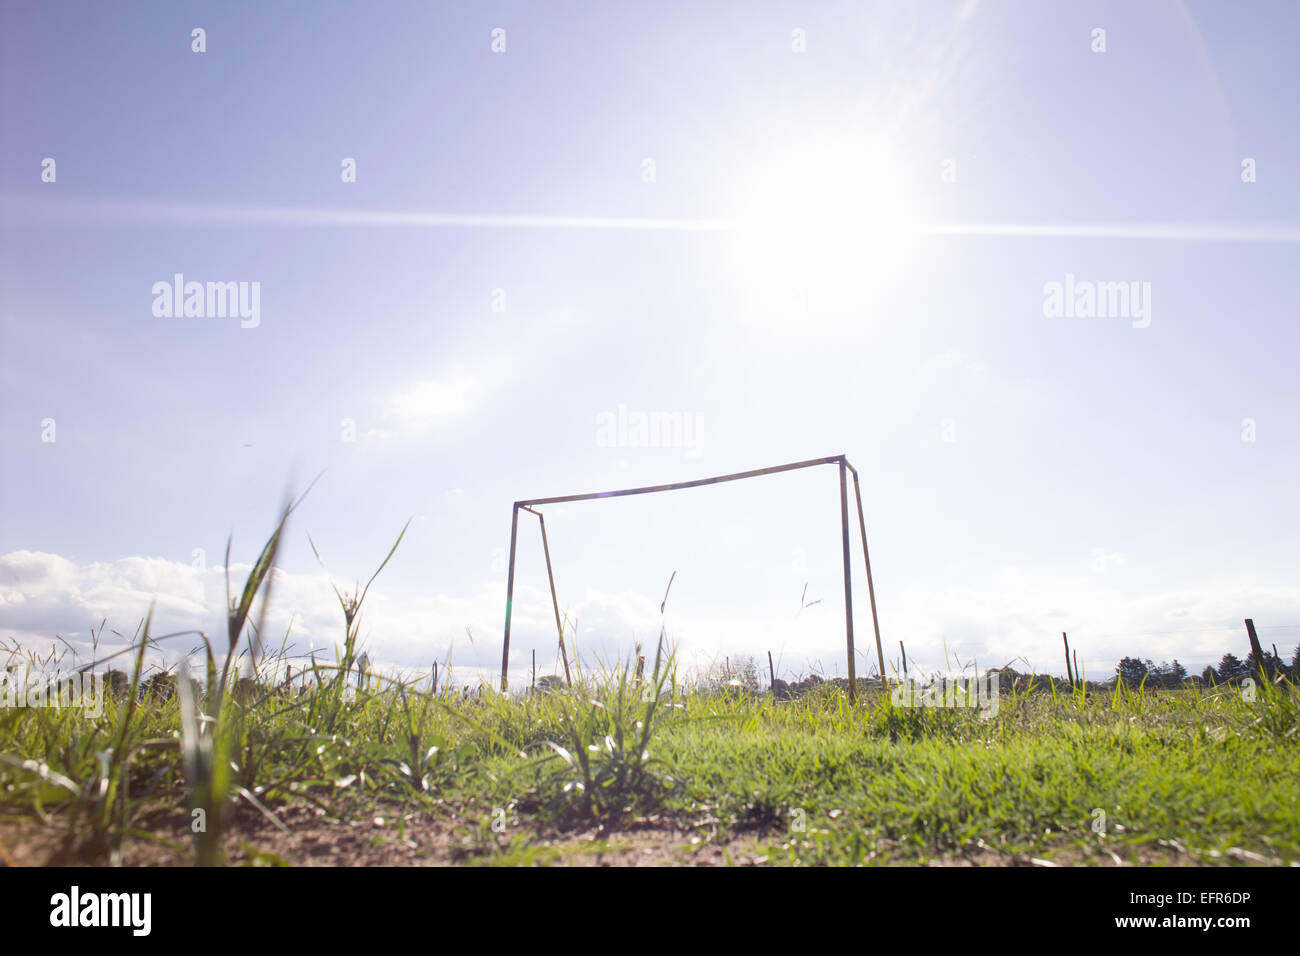 Basso angolo di visione del calcio goalpost su terreni accidentati, Buenos Aires, Argentina Foto Stock